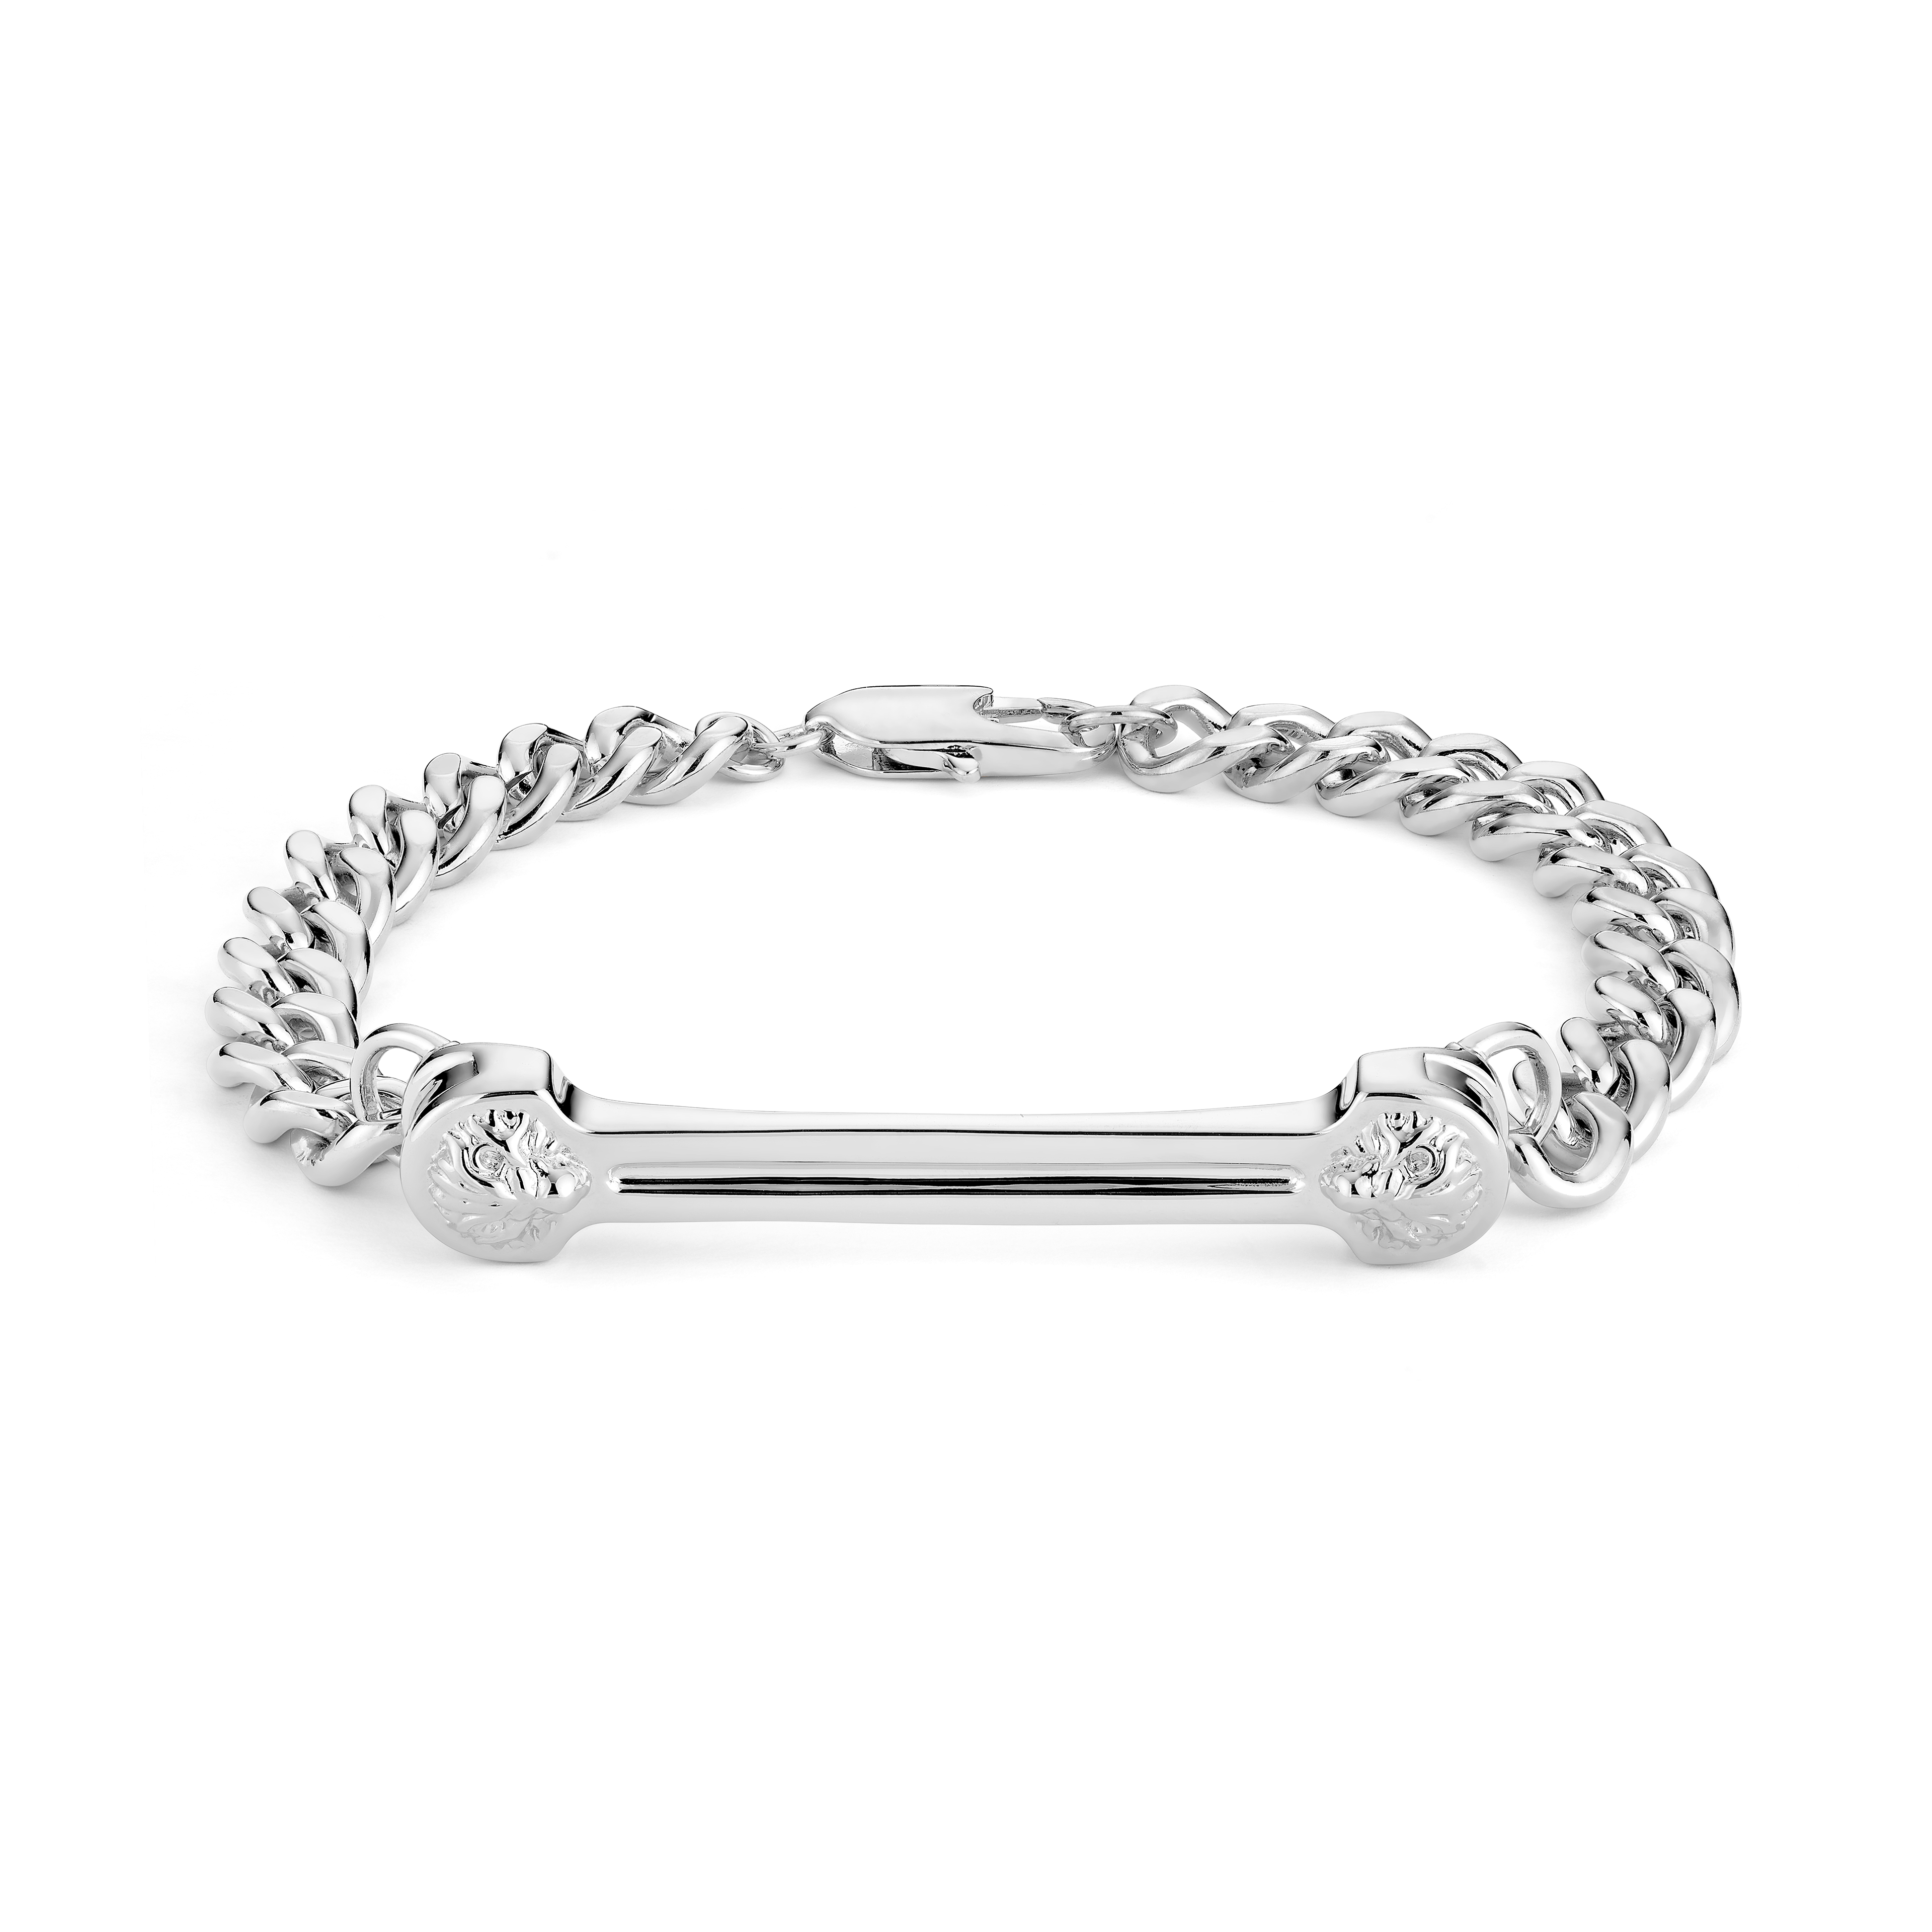 Lion head silver chain bracelet for Men & Women | Buy Online